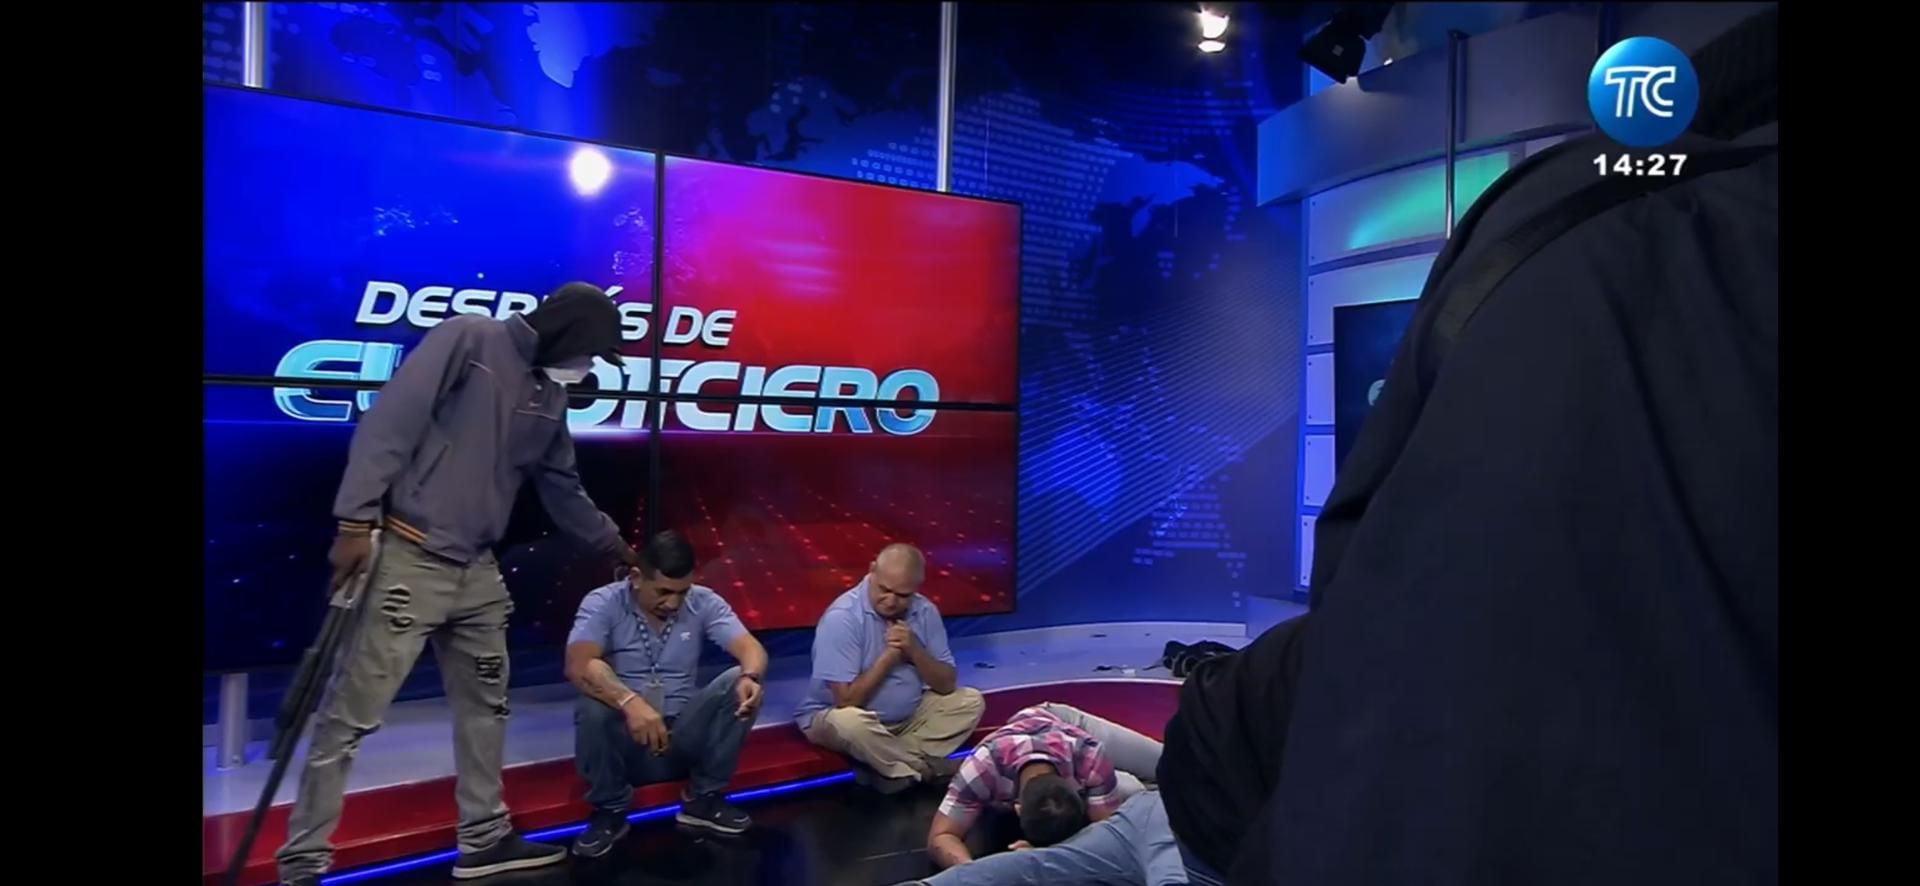 Encapuchados armados ingresaron en el canal de televisión TC, en la ciudad de Guayaquil en el suroeste de Ecuador y sometieron su personal durante una transmisión en vivo. EFE